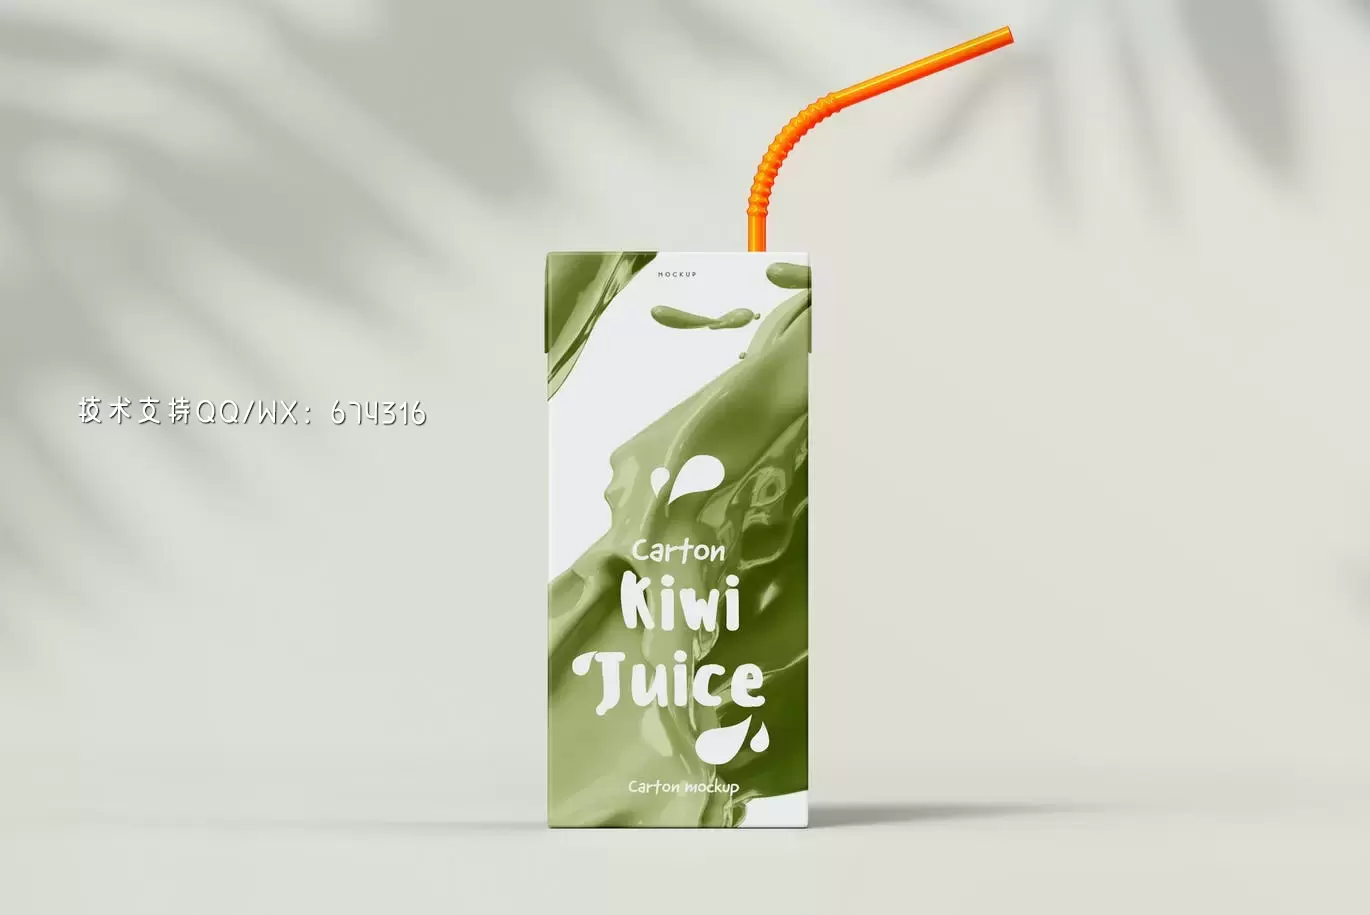 时尚高端逼真质感的高品质果汁牛奶包装设计VI样机展示模型mockups免费下载插图7